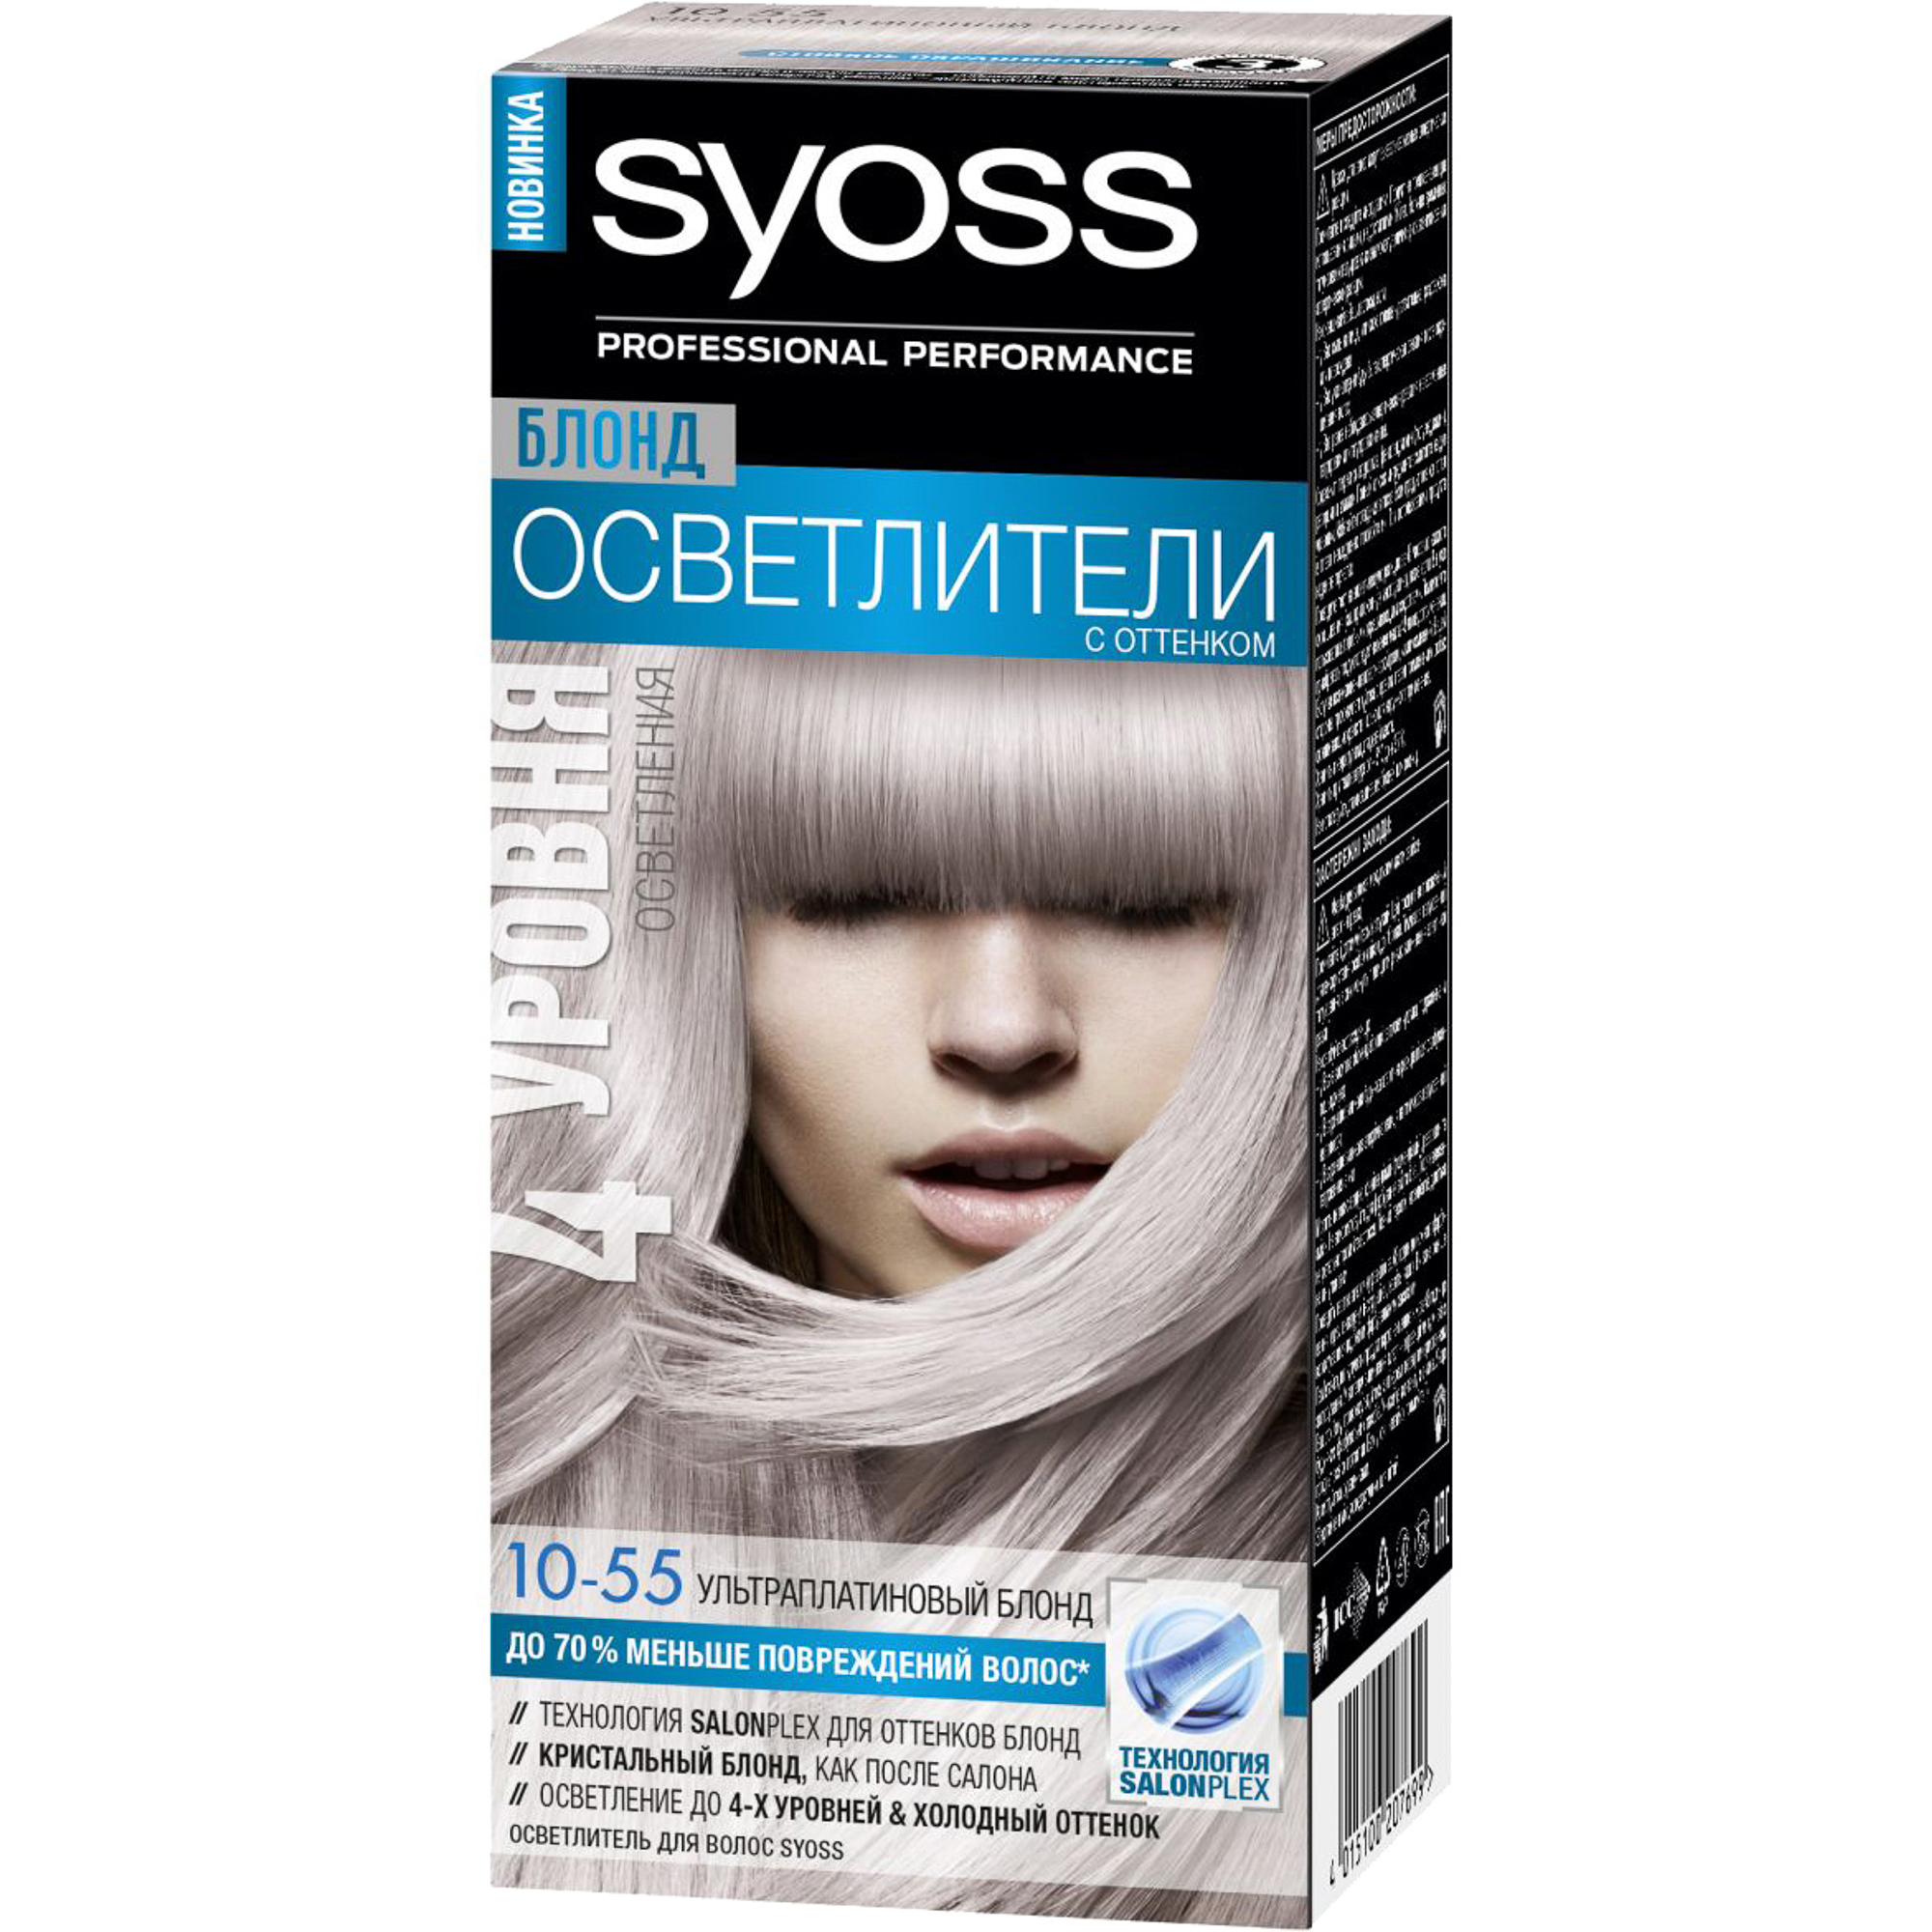 Syoss краска для волос платиновый осветлитель